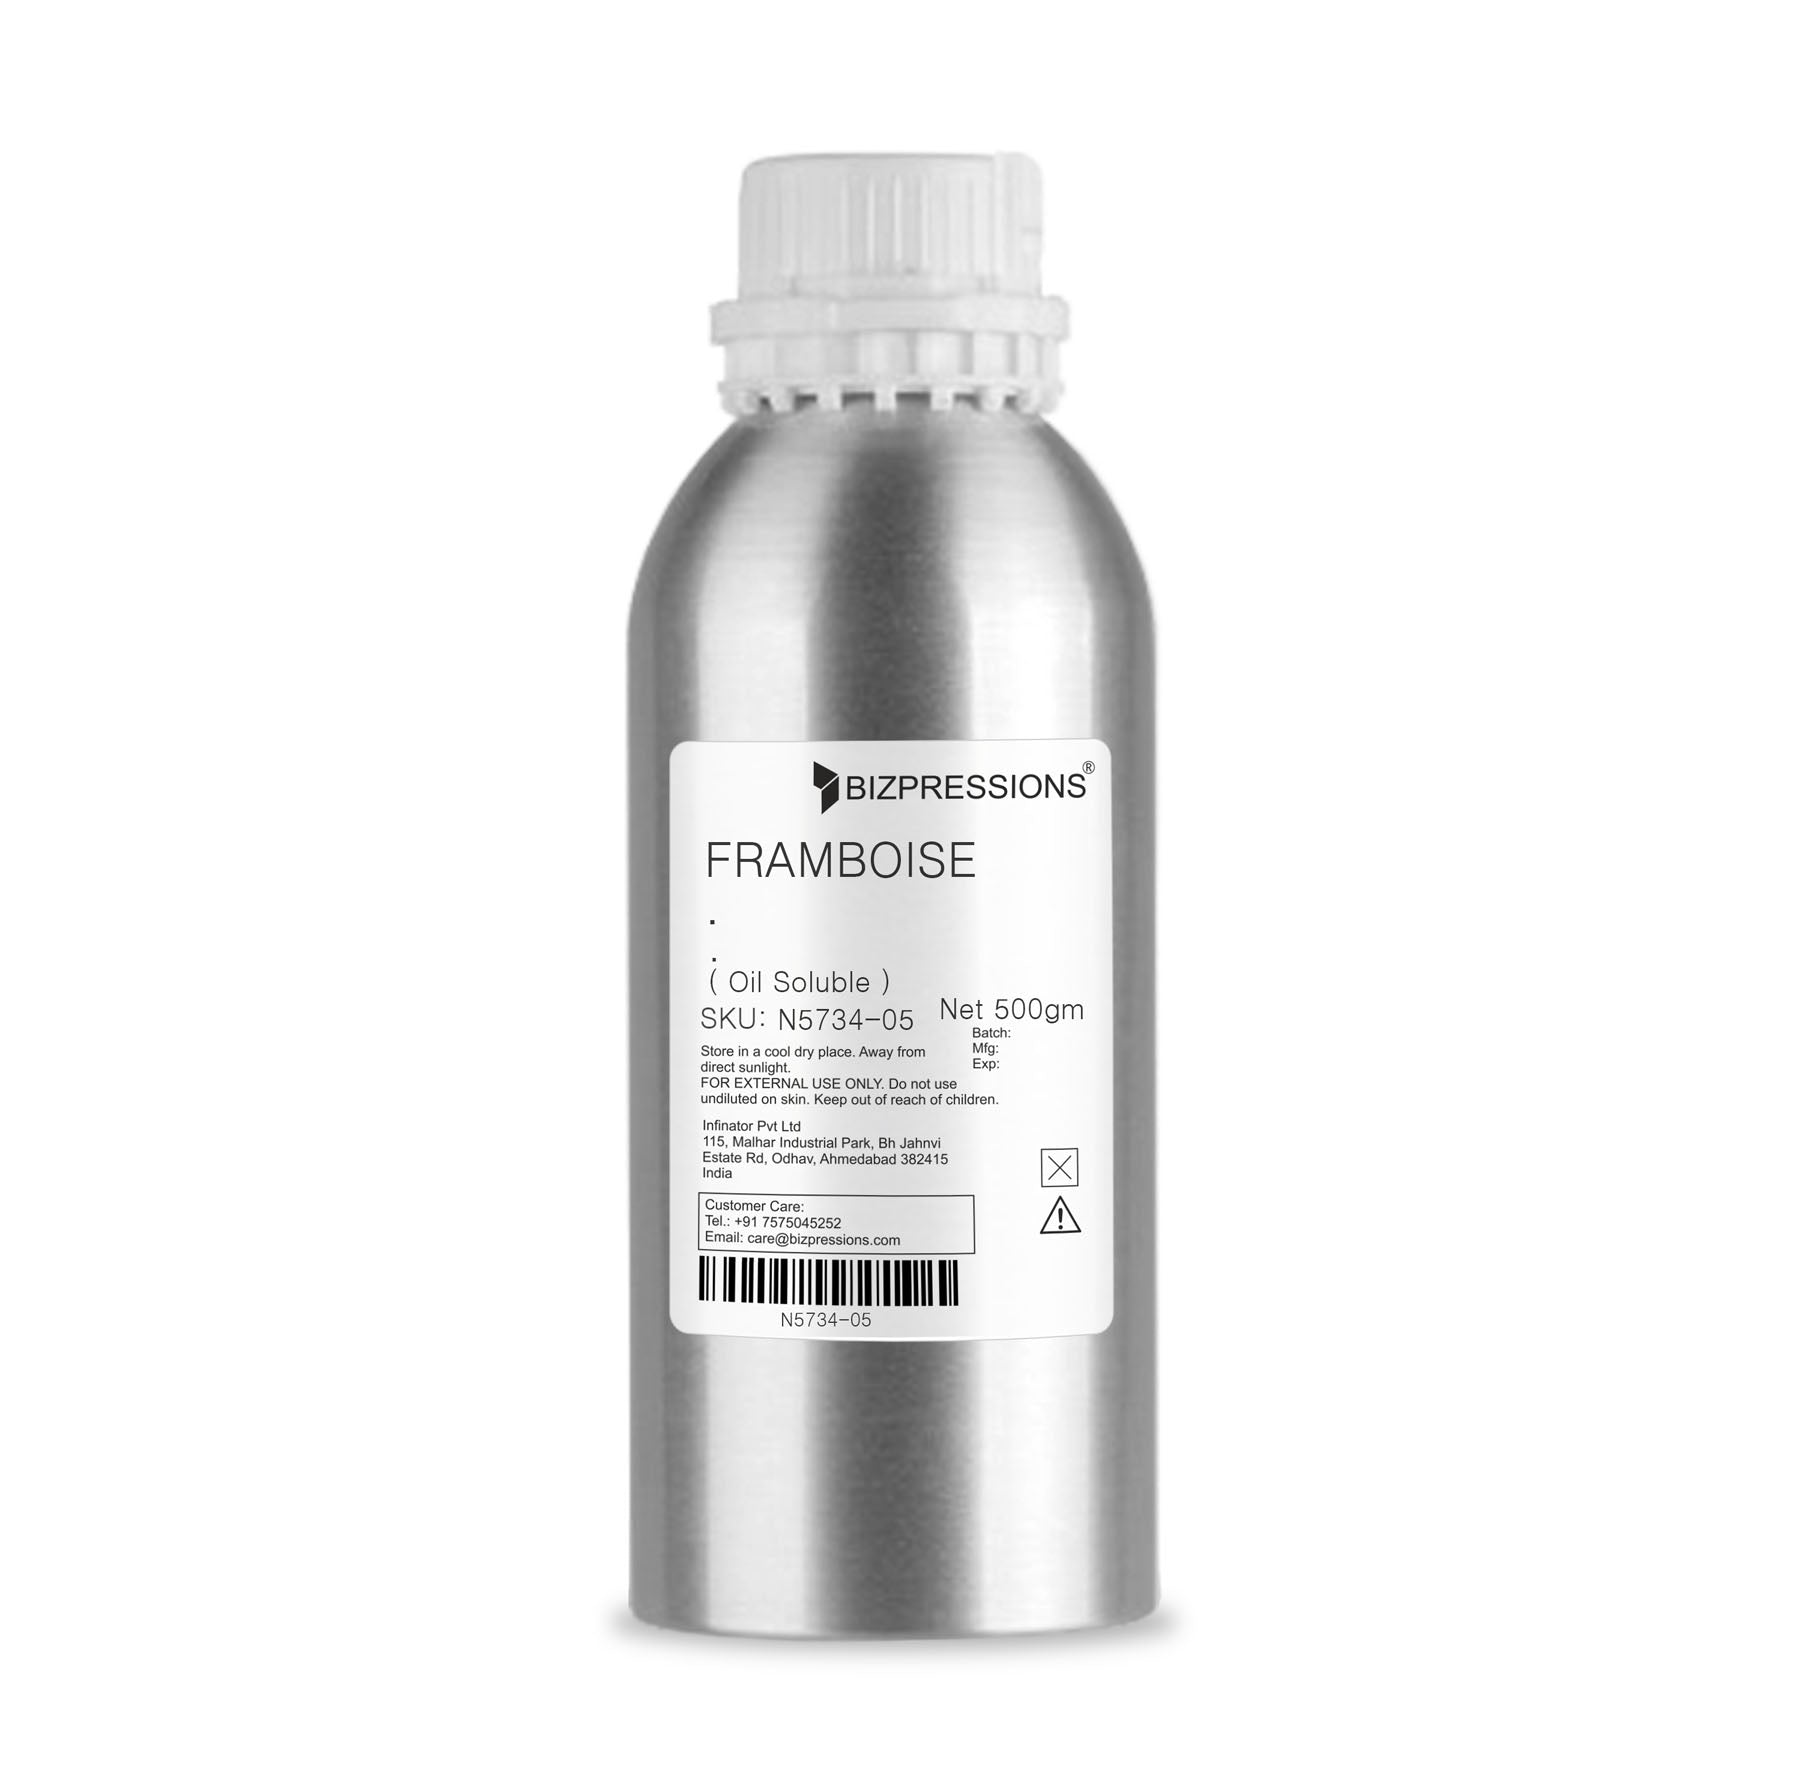 FRAMBOISE - Fragrance ( Oil Soluble ) - 500 gm